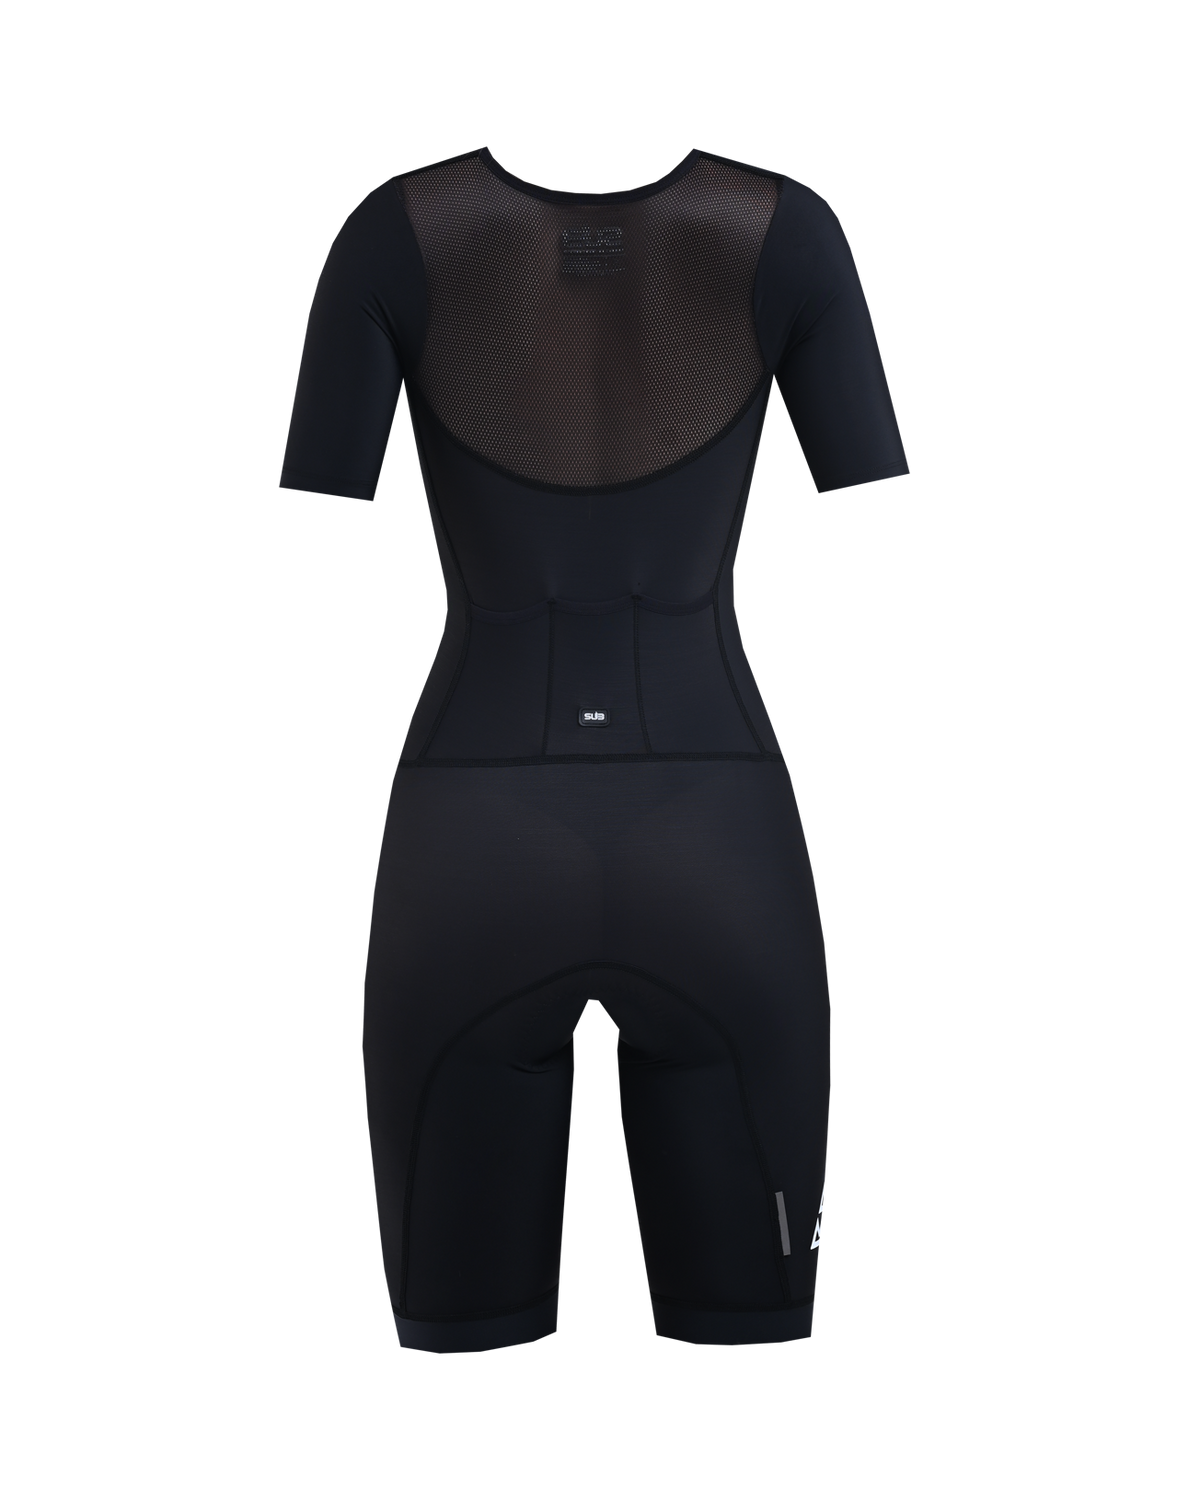 SUB Premium Trisuit Women Short Sleeves Black